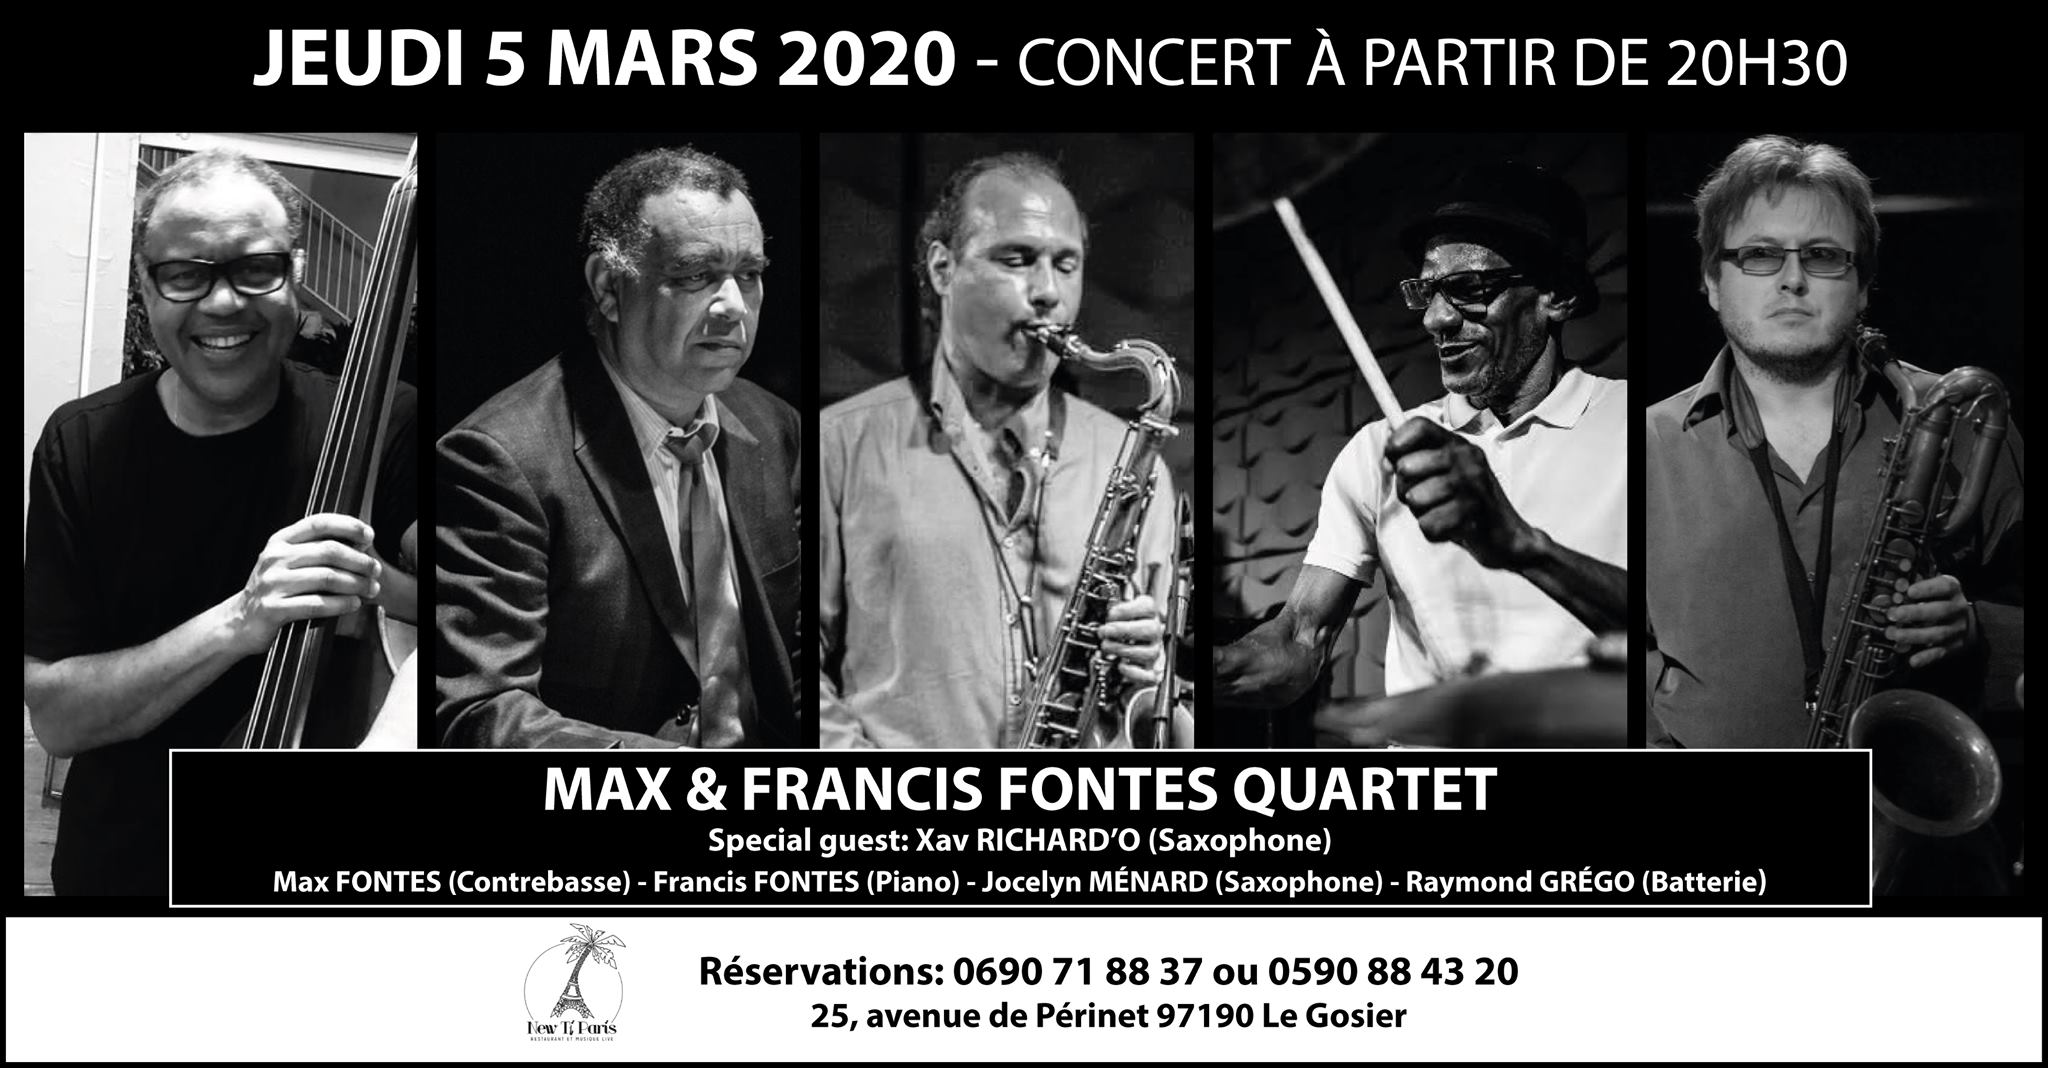 Max & Francis Fontes Quartet